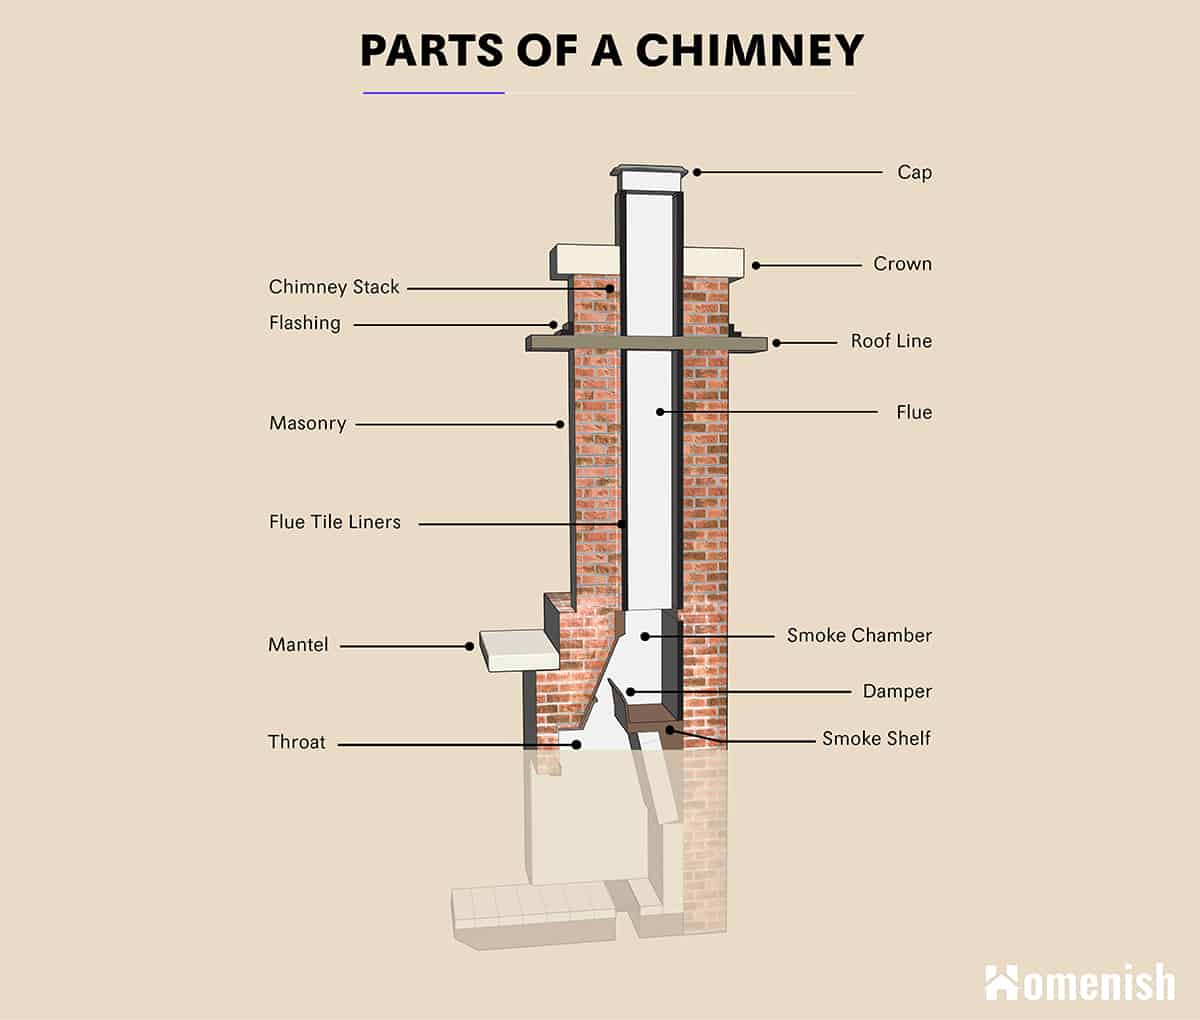 Anatomy of a Chimney